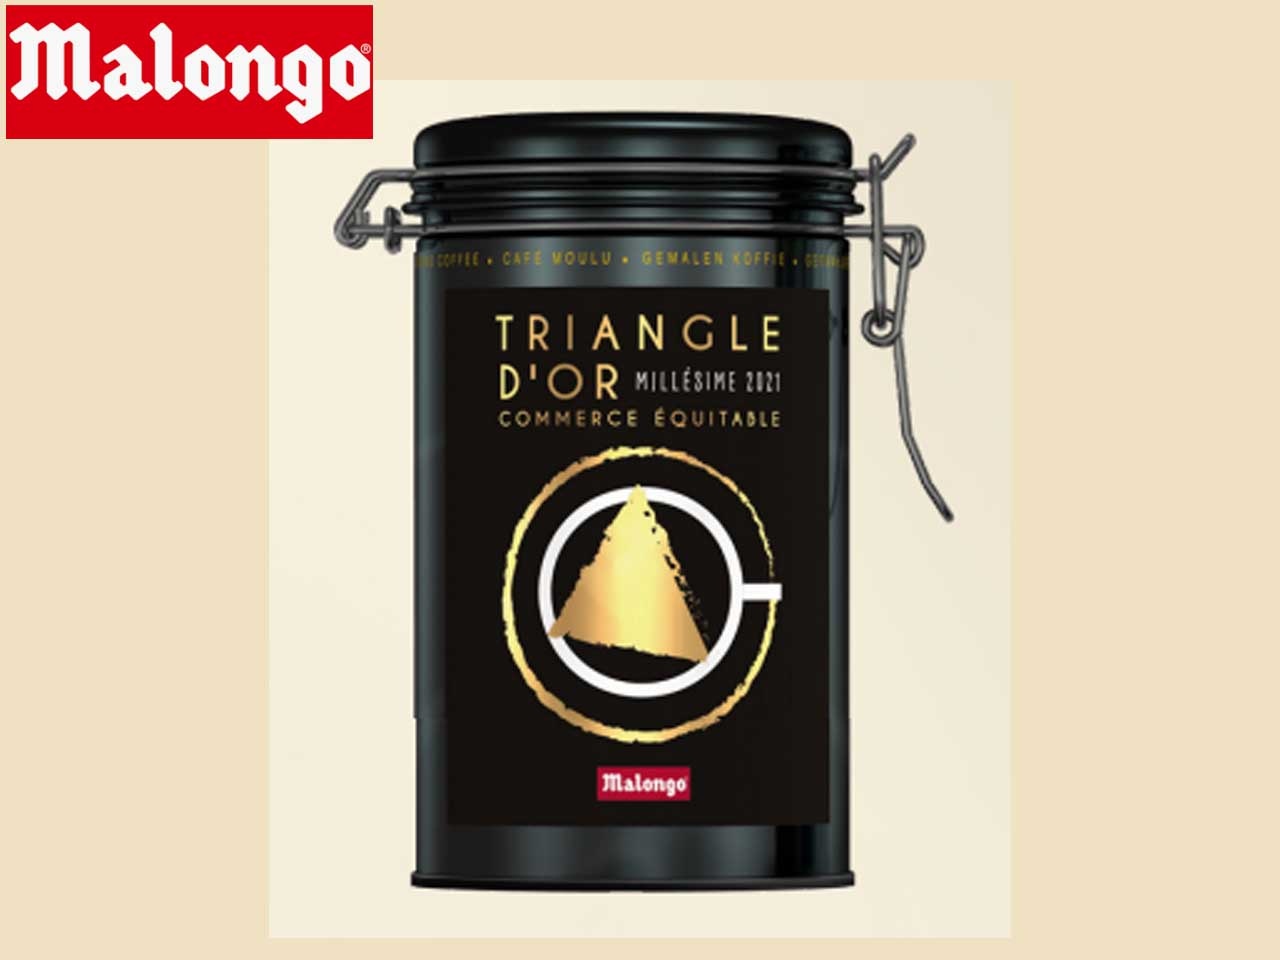 Malongo présente son nouveau Millésime Commerce Equitable : Le Triangle d’Or